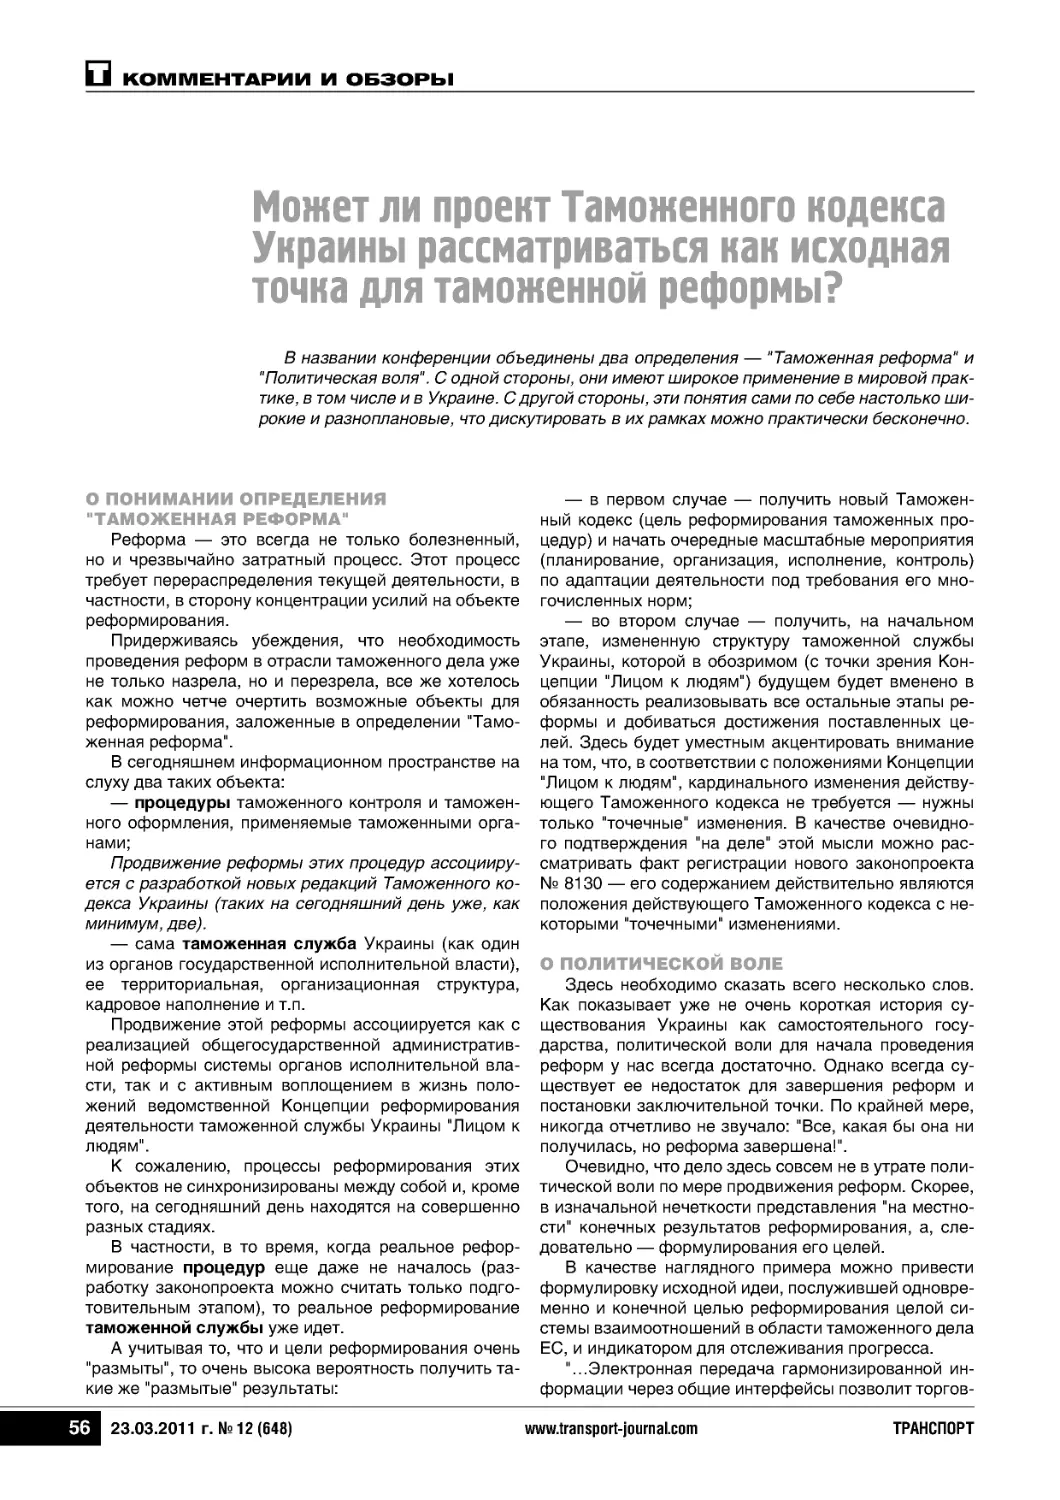 Может ли проект Таможенного кодексаУкраины рассматриваться как исходнаяточка для таможенной реформы?